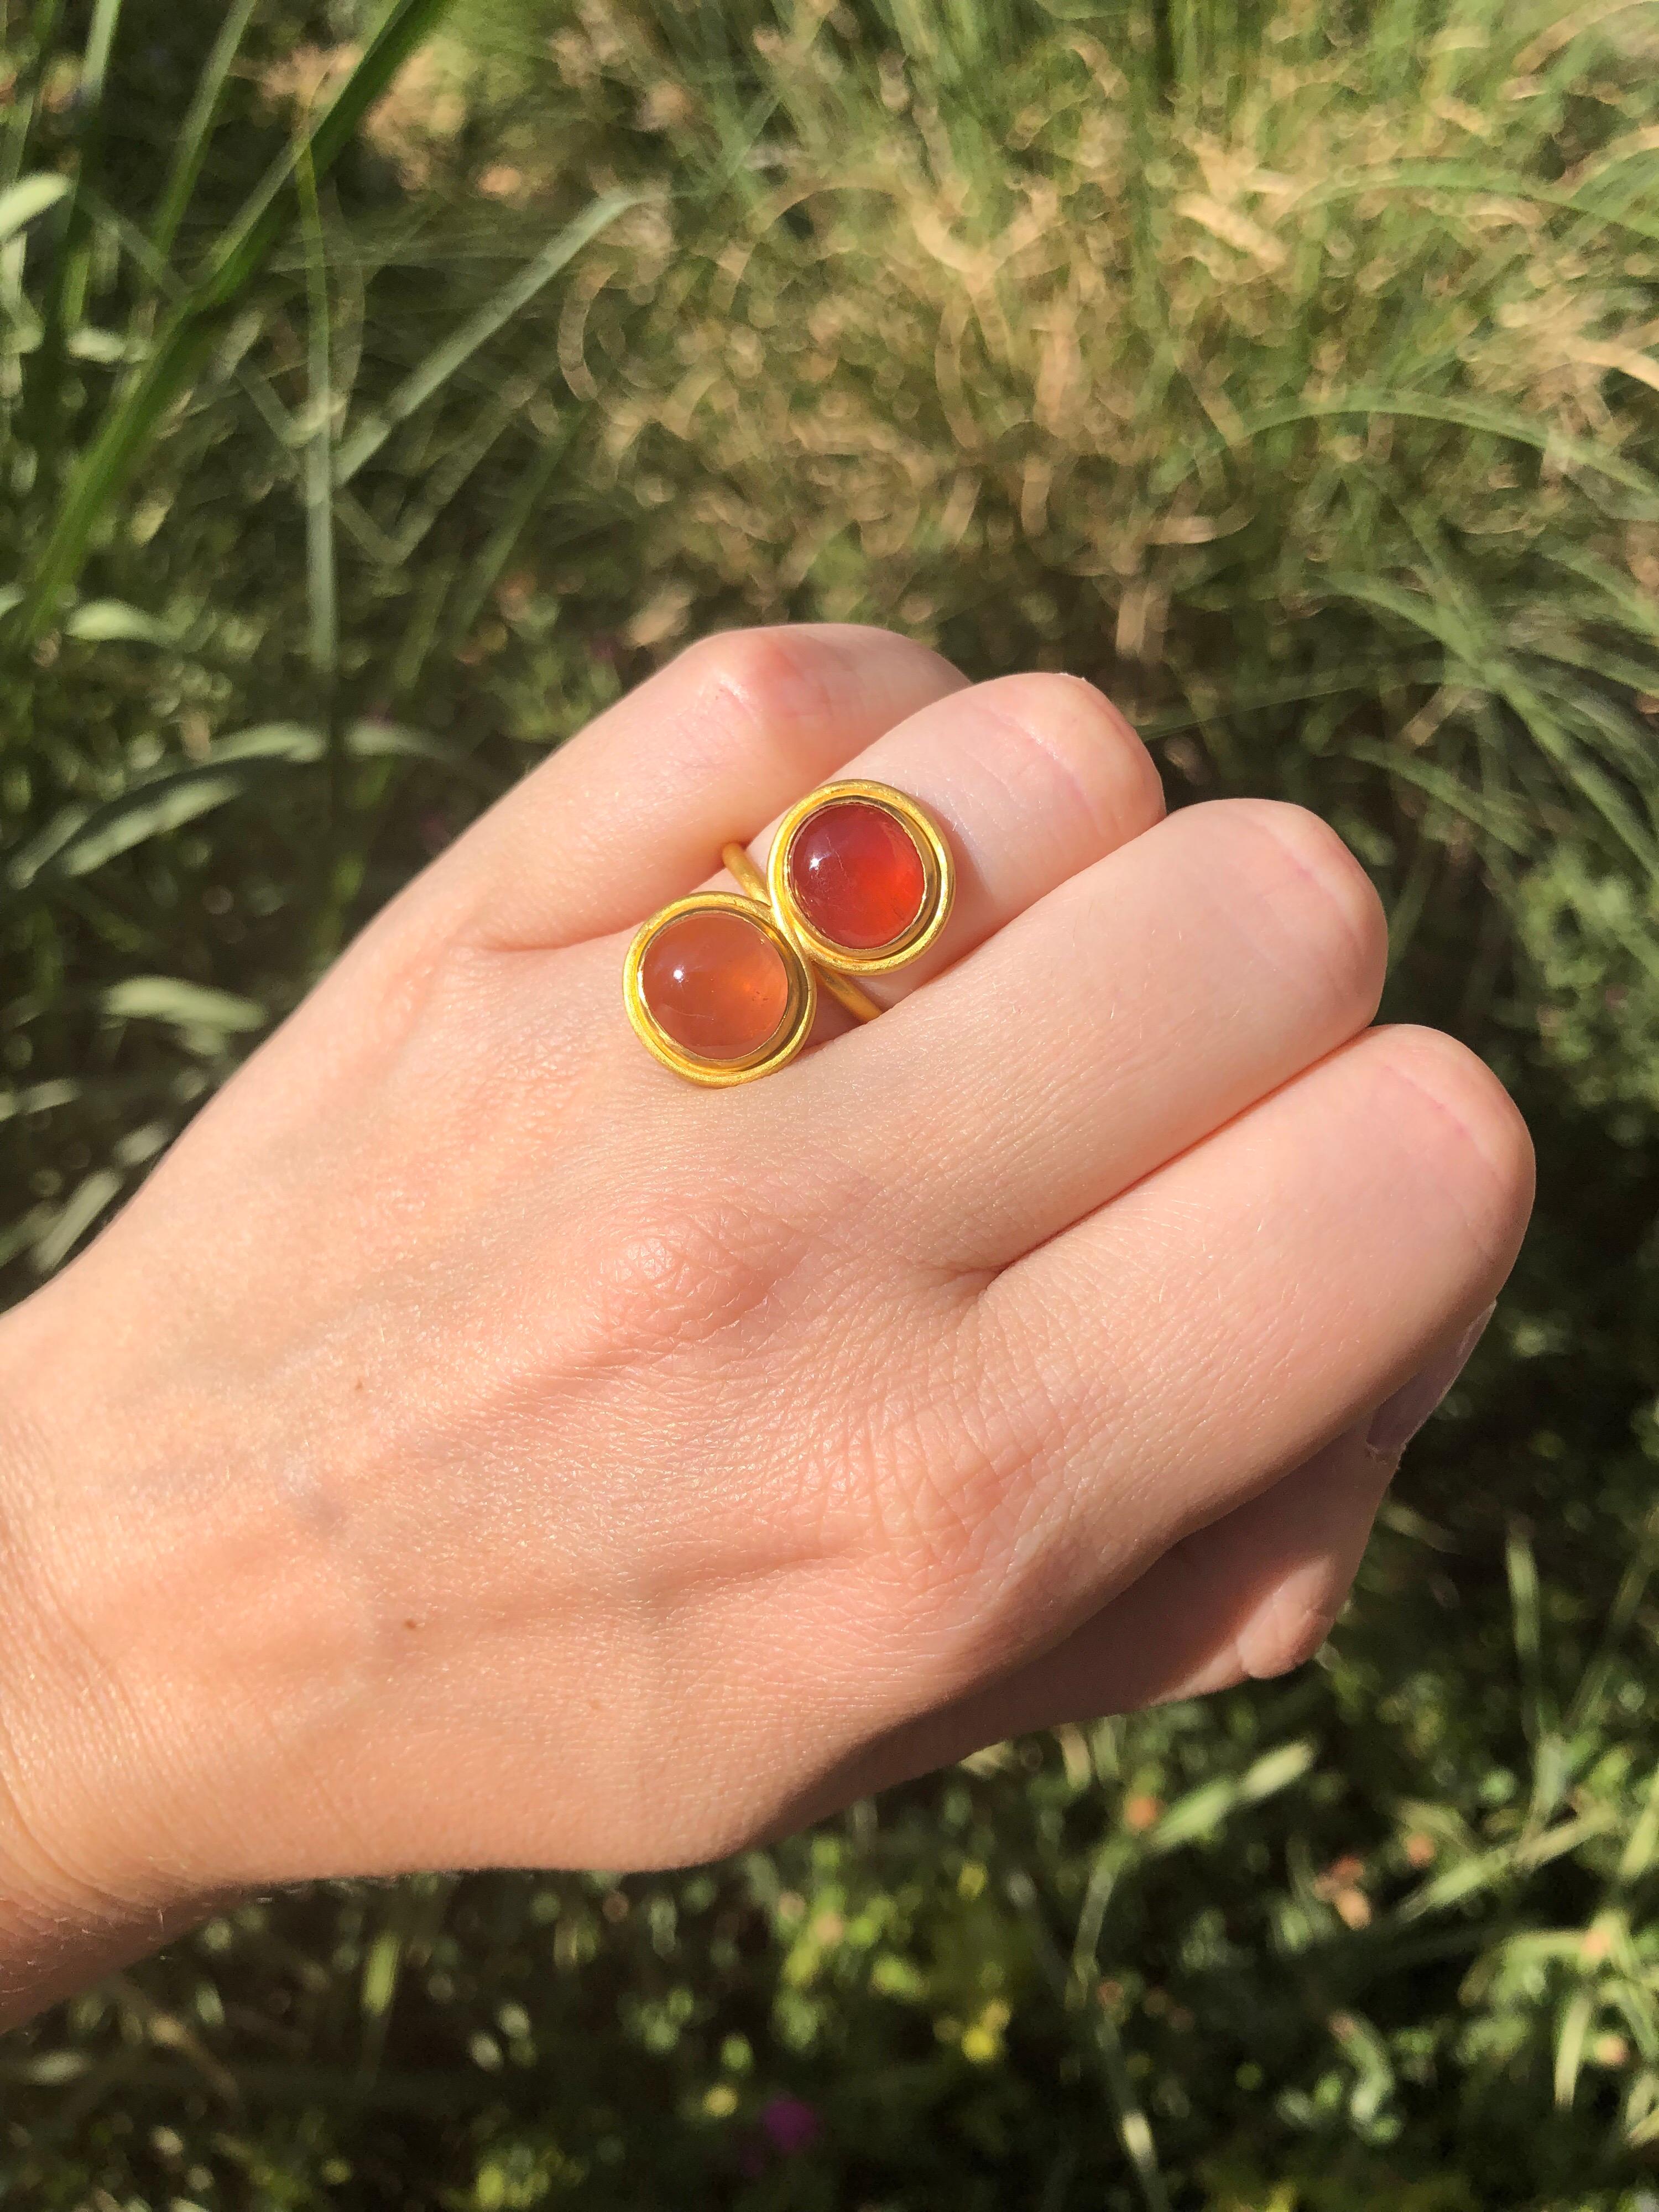 Dieser 8-stellige moderne Ring von Scrives besteht aus 2 leicht ovalen Turmalin-Cabochons. Einer der Turmaline hat eine orange-pfirsichfarbene Farbe und der andere hat eher eine abricot-orange Farbe. 
Sie sind ca. 10 mm groß und haben ein